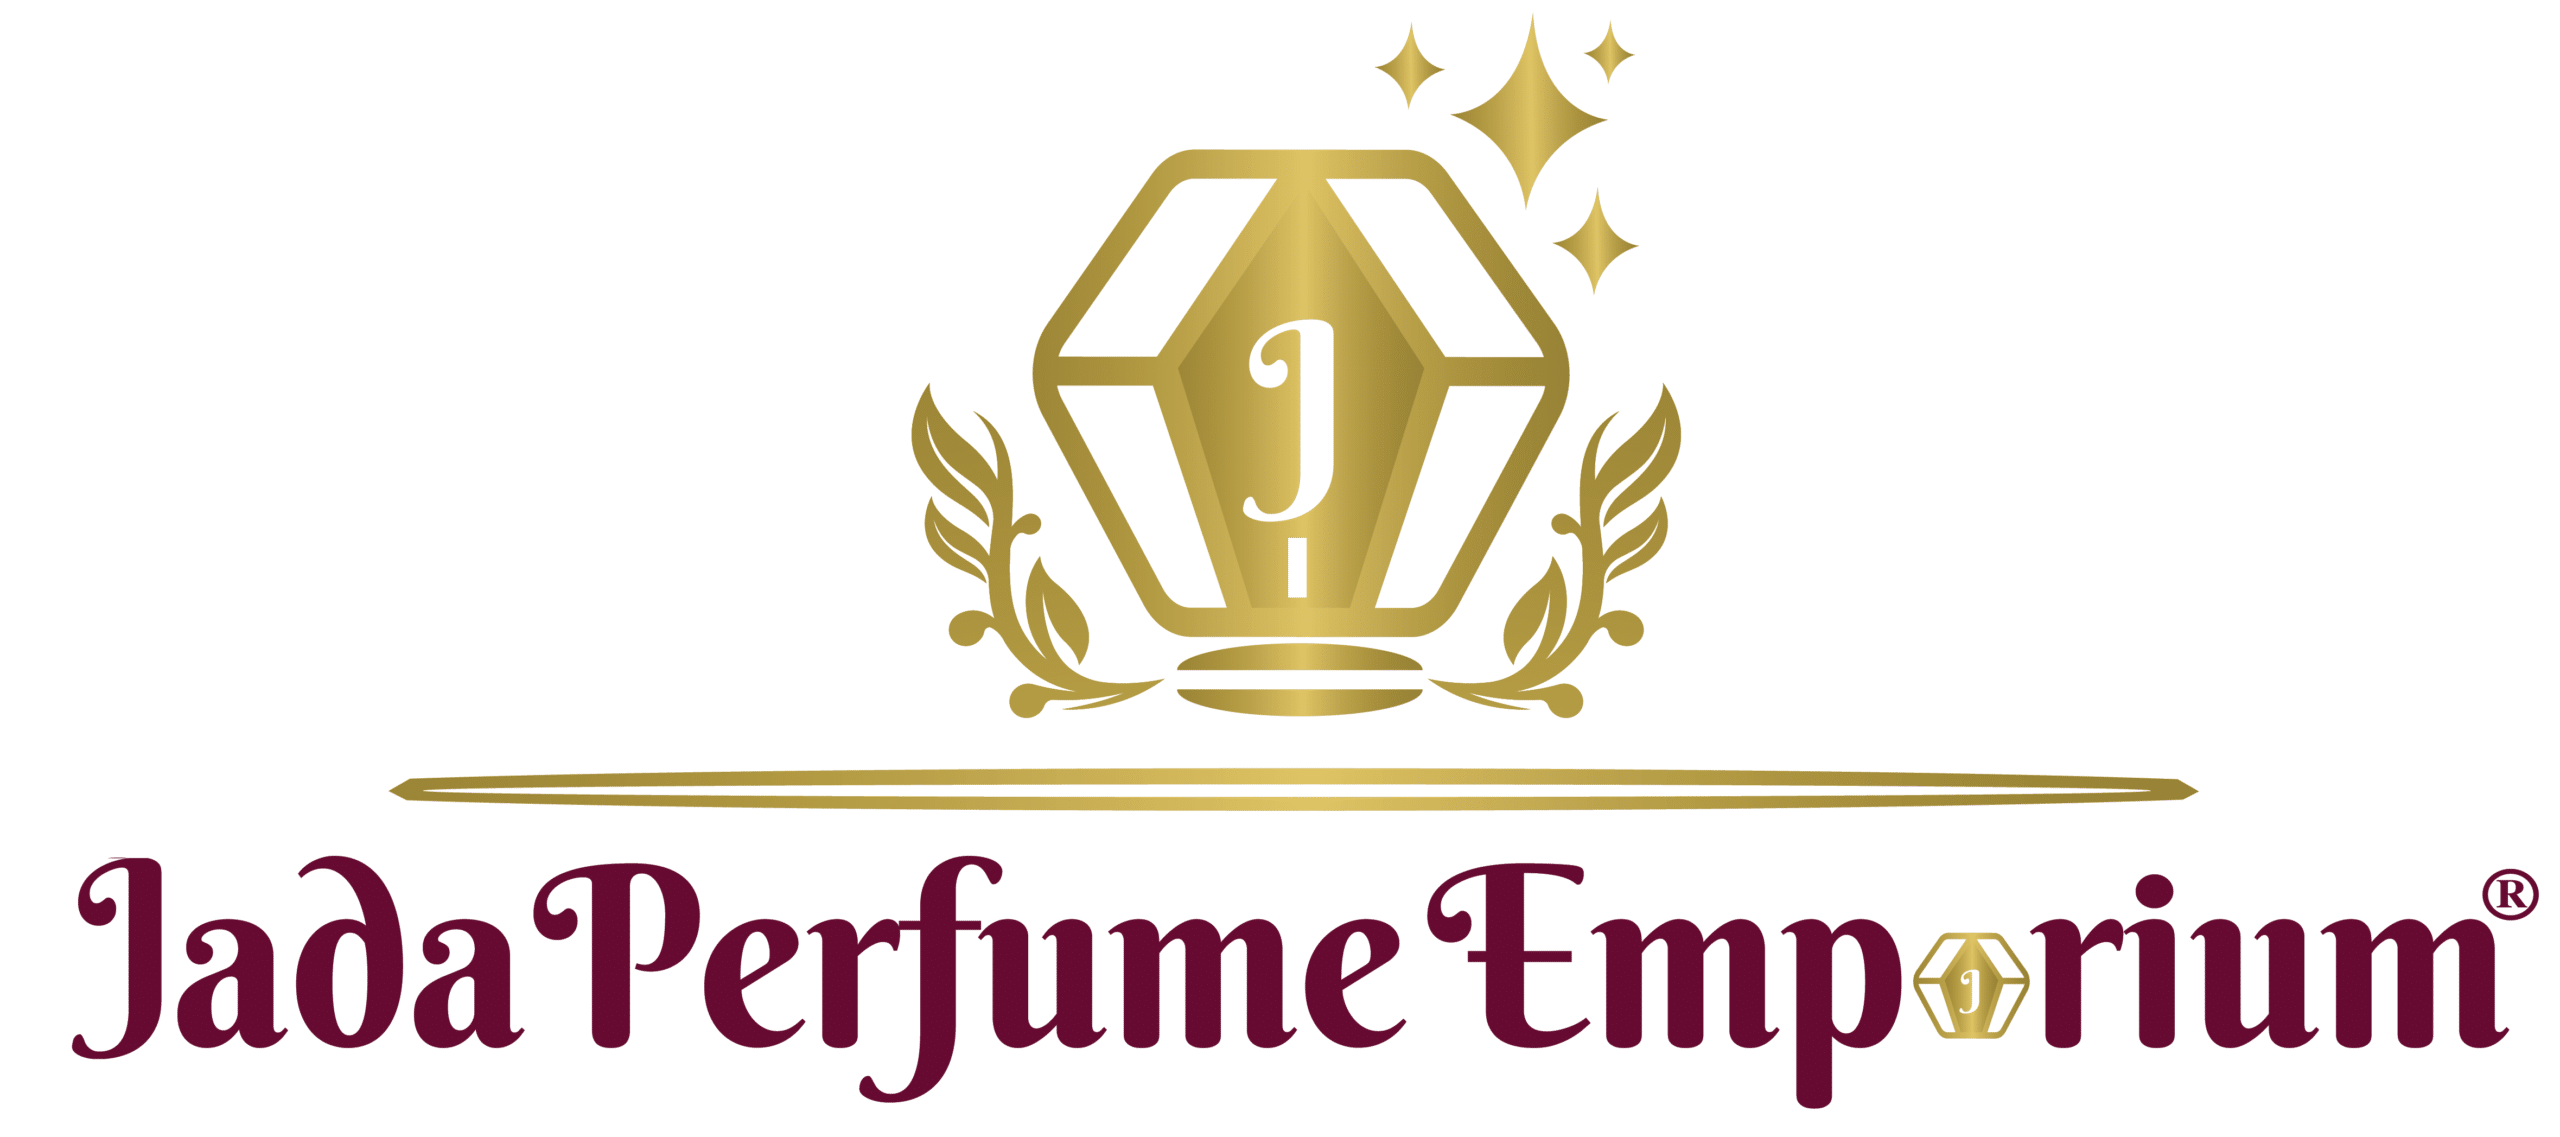 Jada Perfume Emporium TM